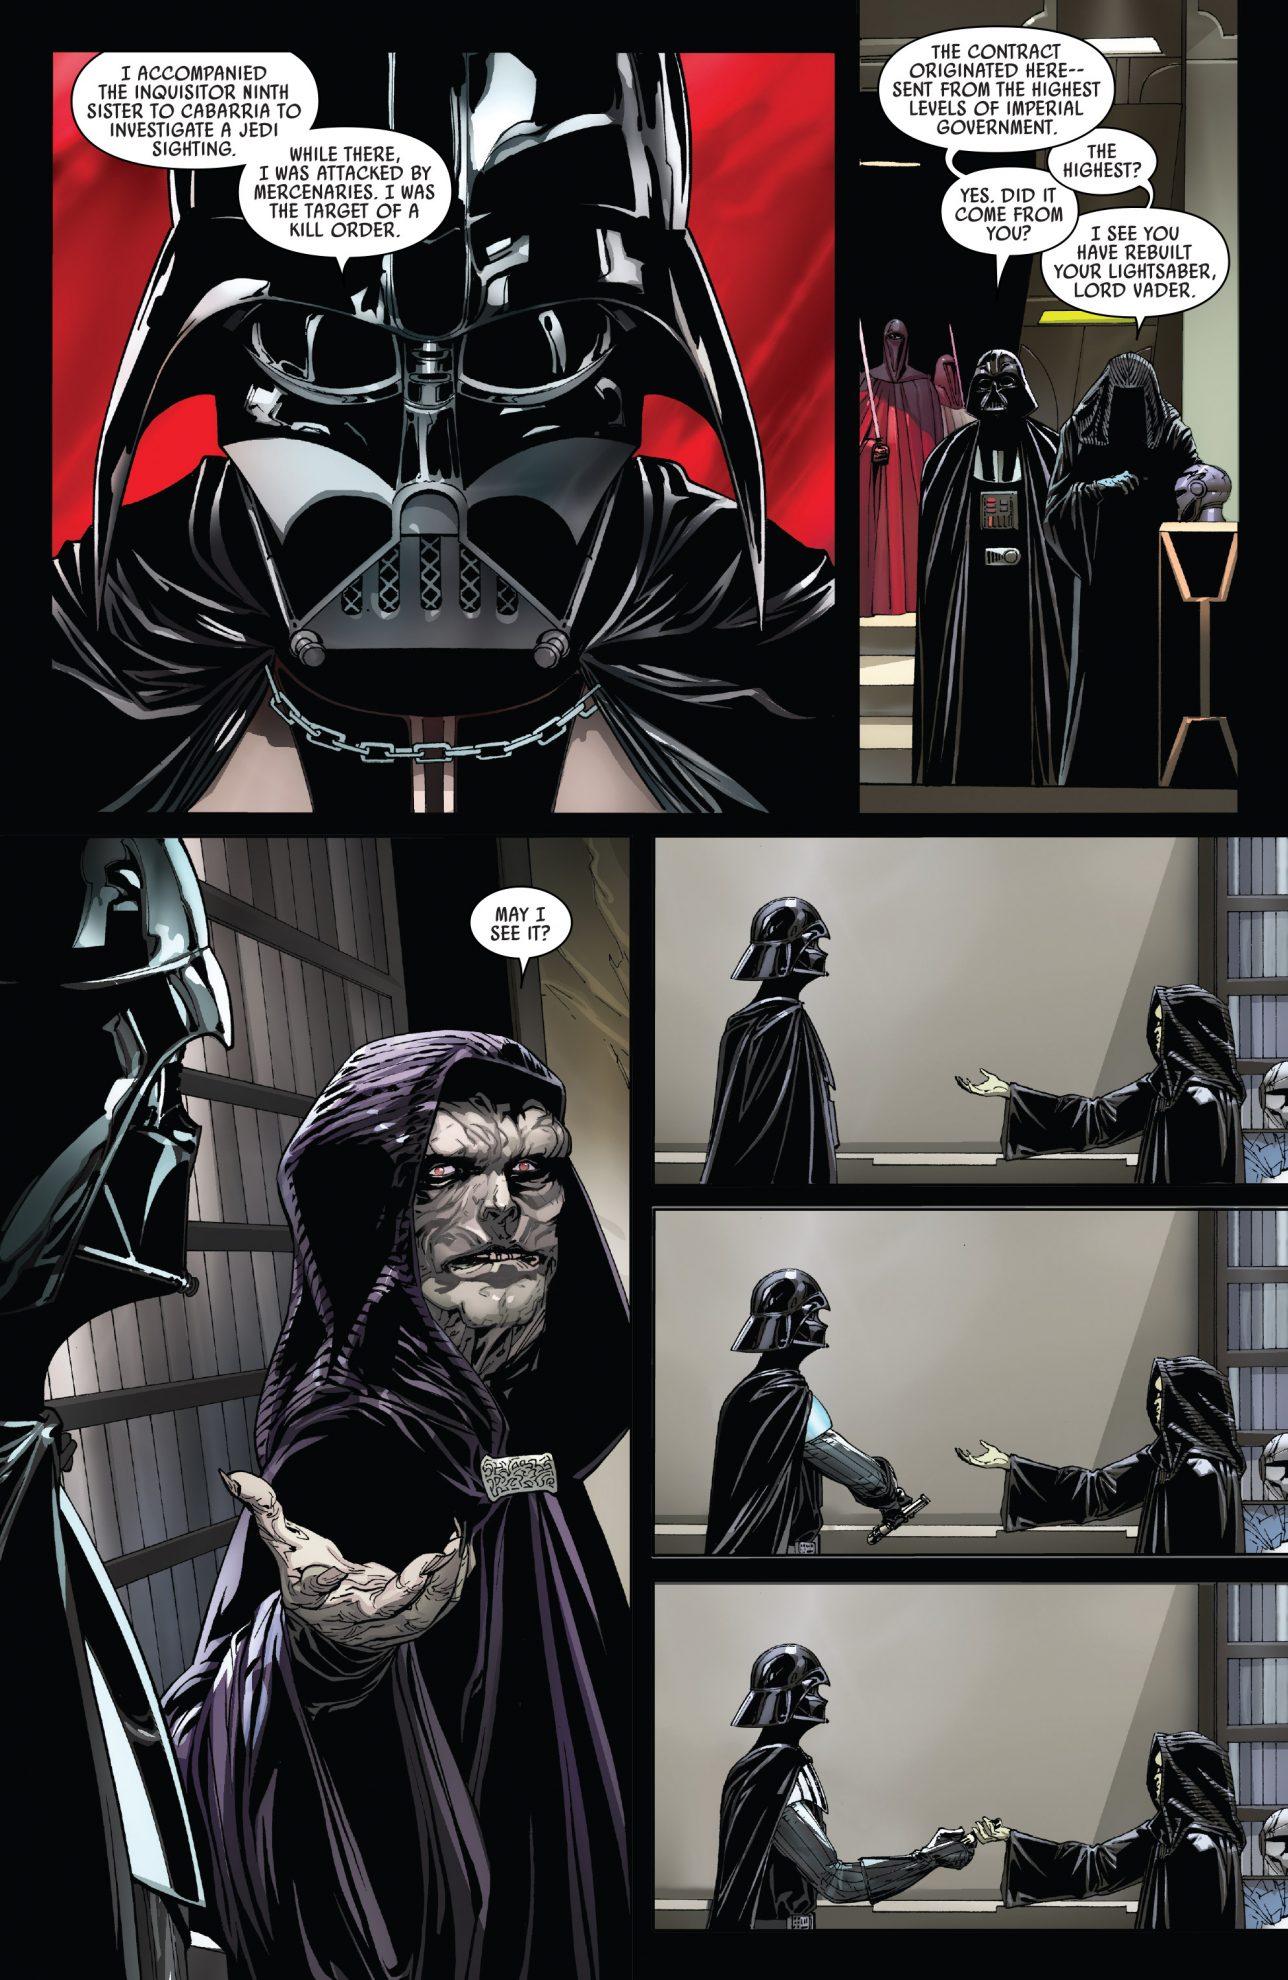 Darth Vader Creates A New Lightsaber Hilt